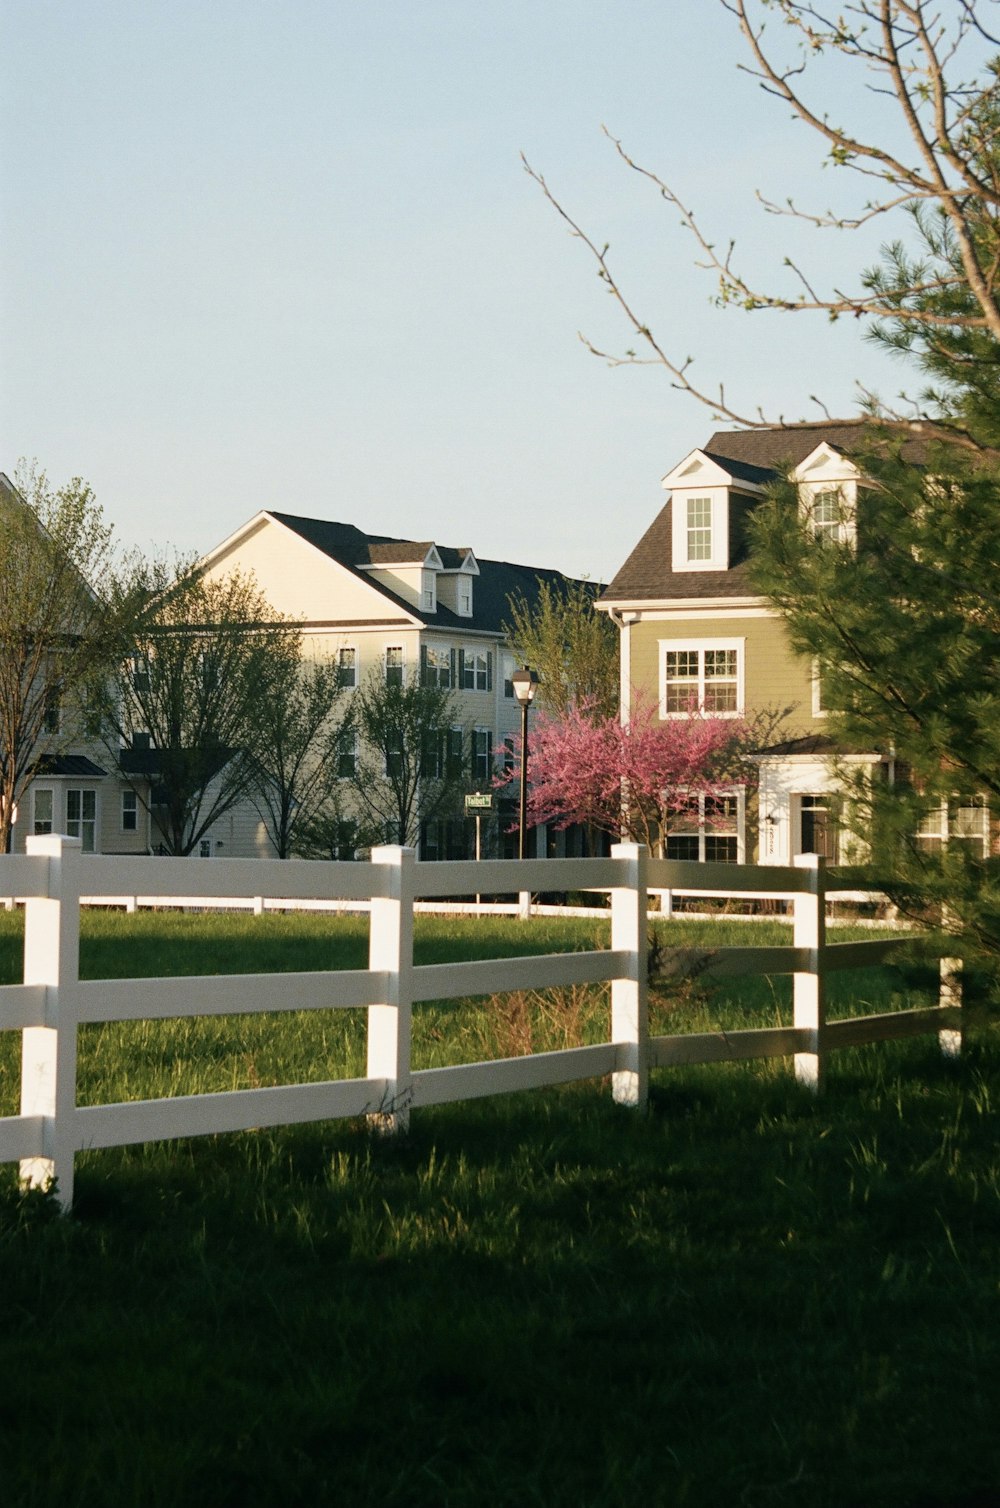 Maison en béton brun et blanc près du champ d’herbe verte pendant la journée